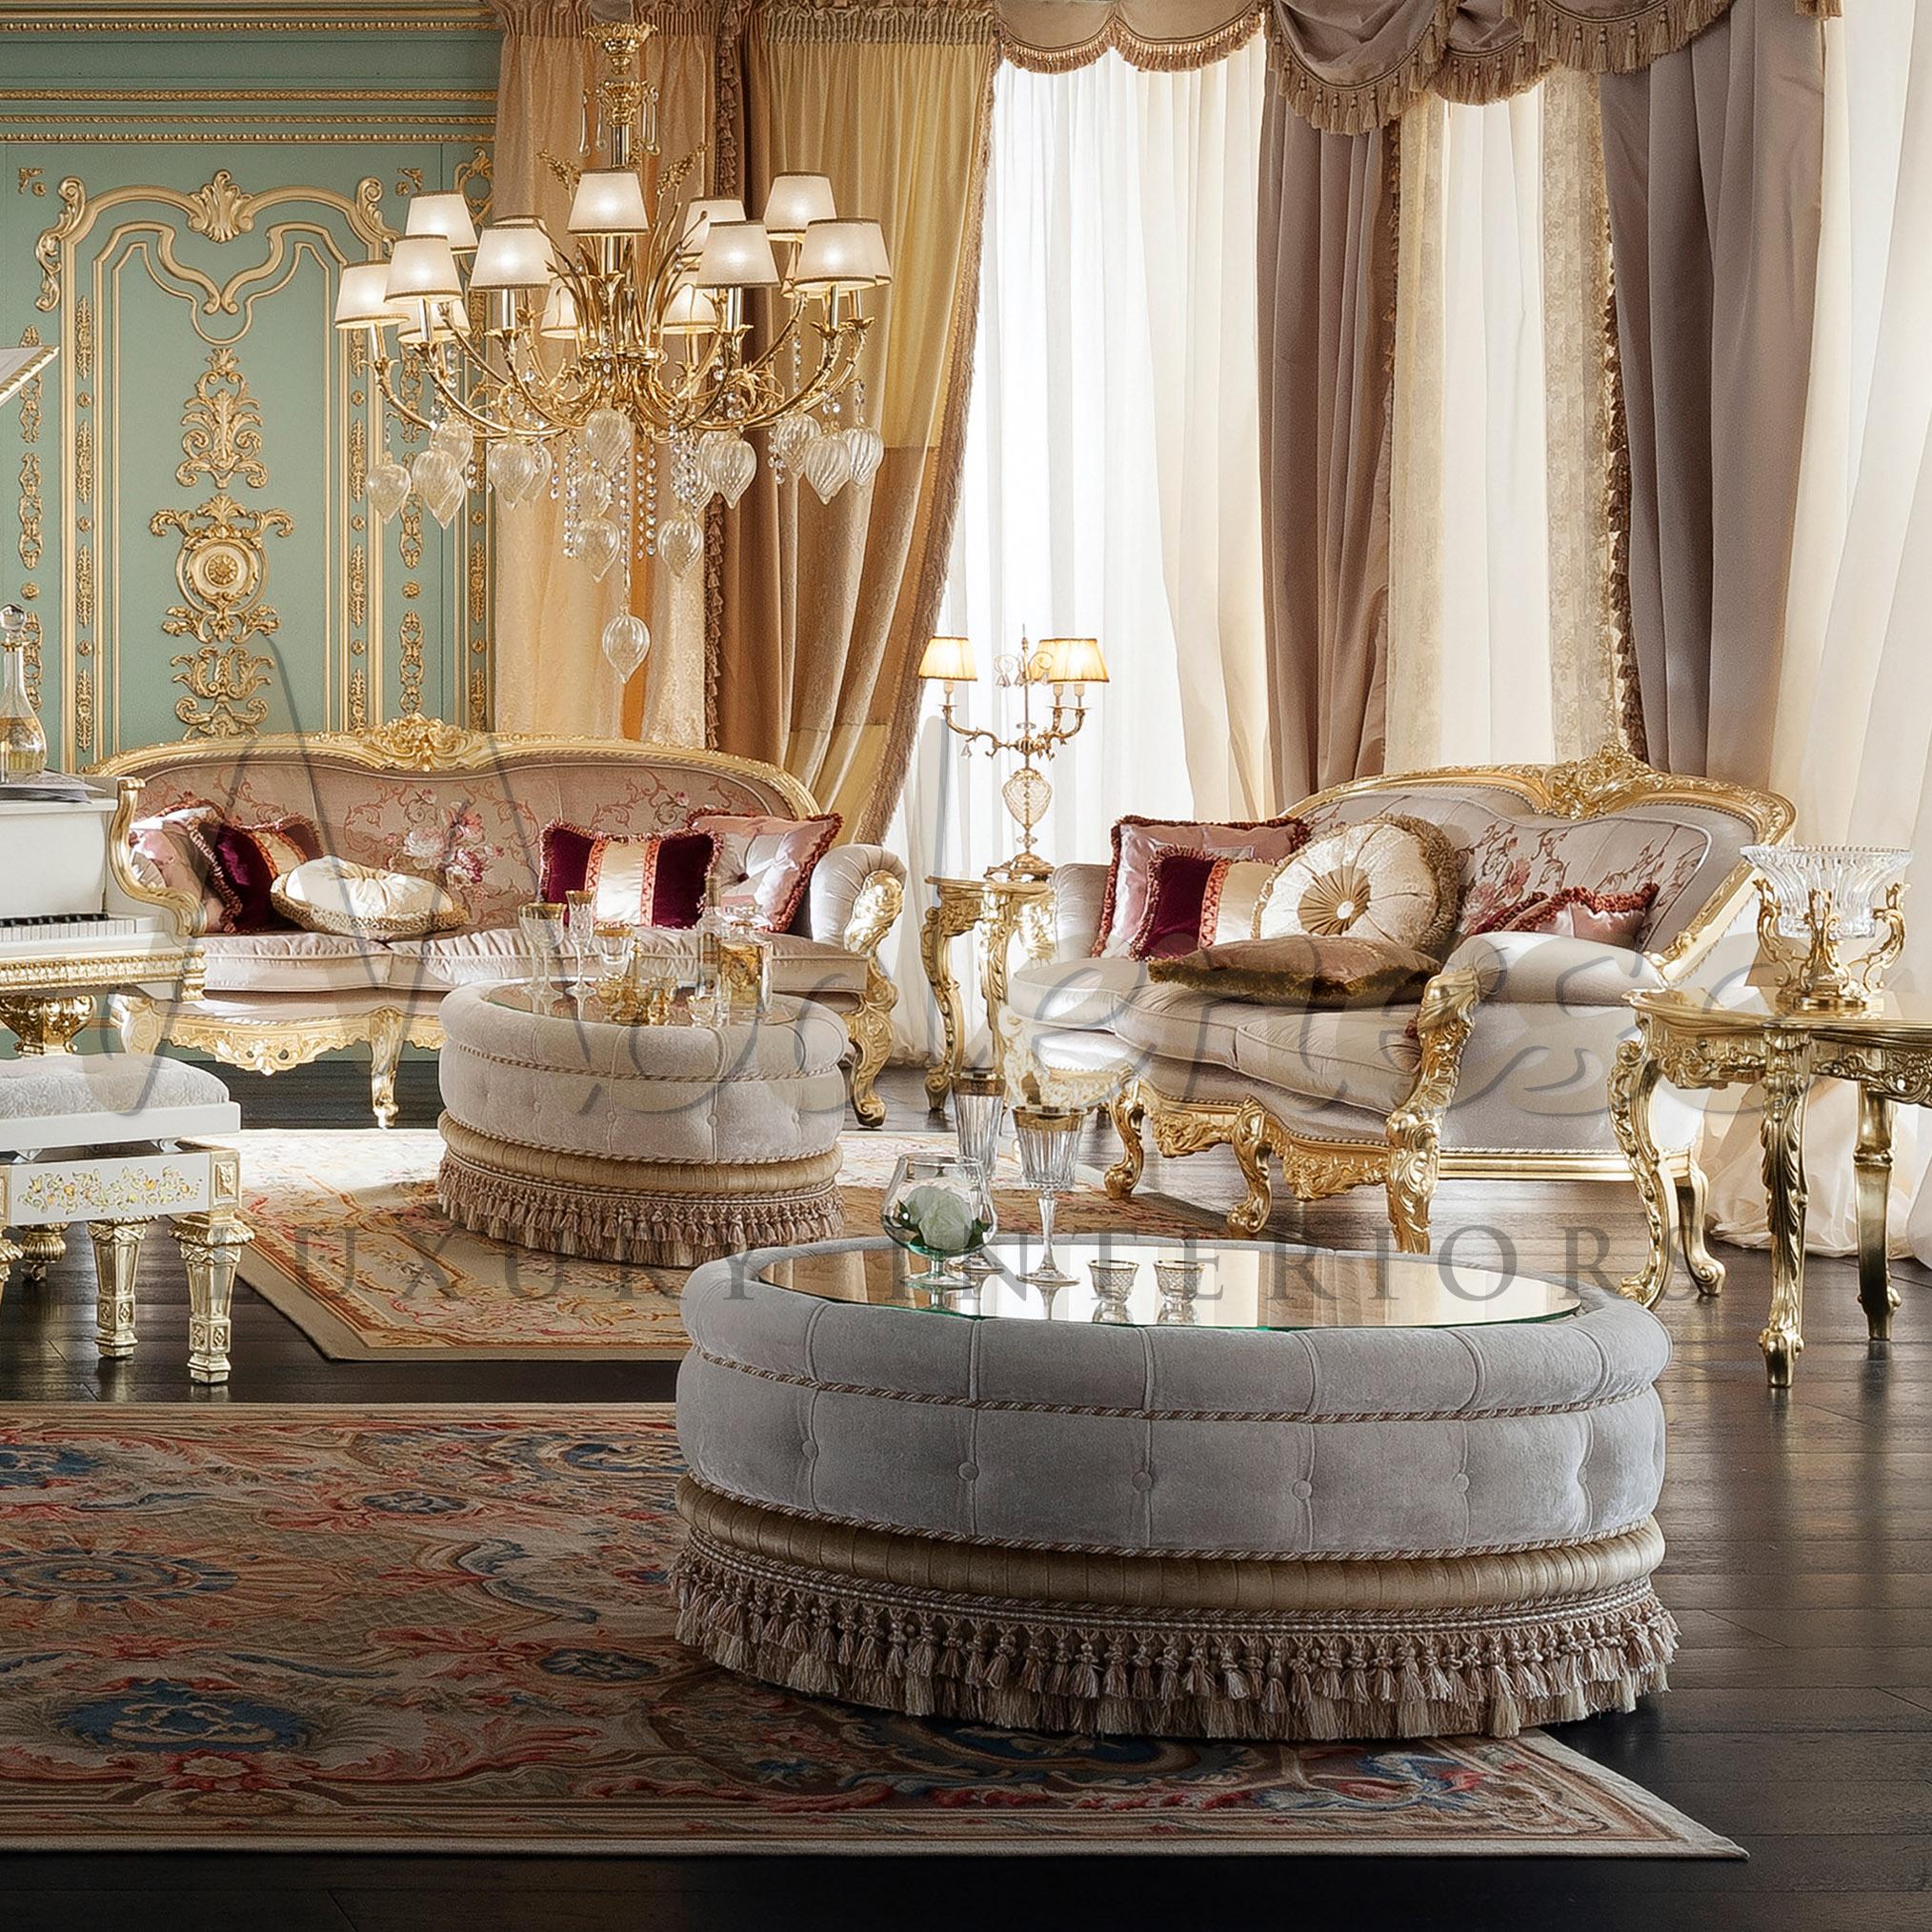 Großartig und elegant, die raffinierte goldene verschnörkelte Krone bis hin zur Schürze und den Beinen des Sofas, die von unseren fachkundigen Kunsthandwerkern hergestellt werden, um Ihrem Interieur zu entsprechen. Dieser elegante Sofarahmen aus